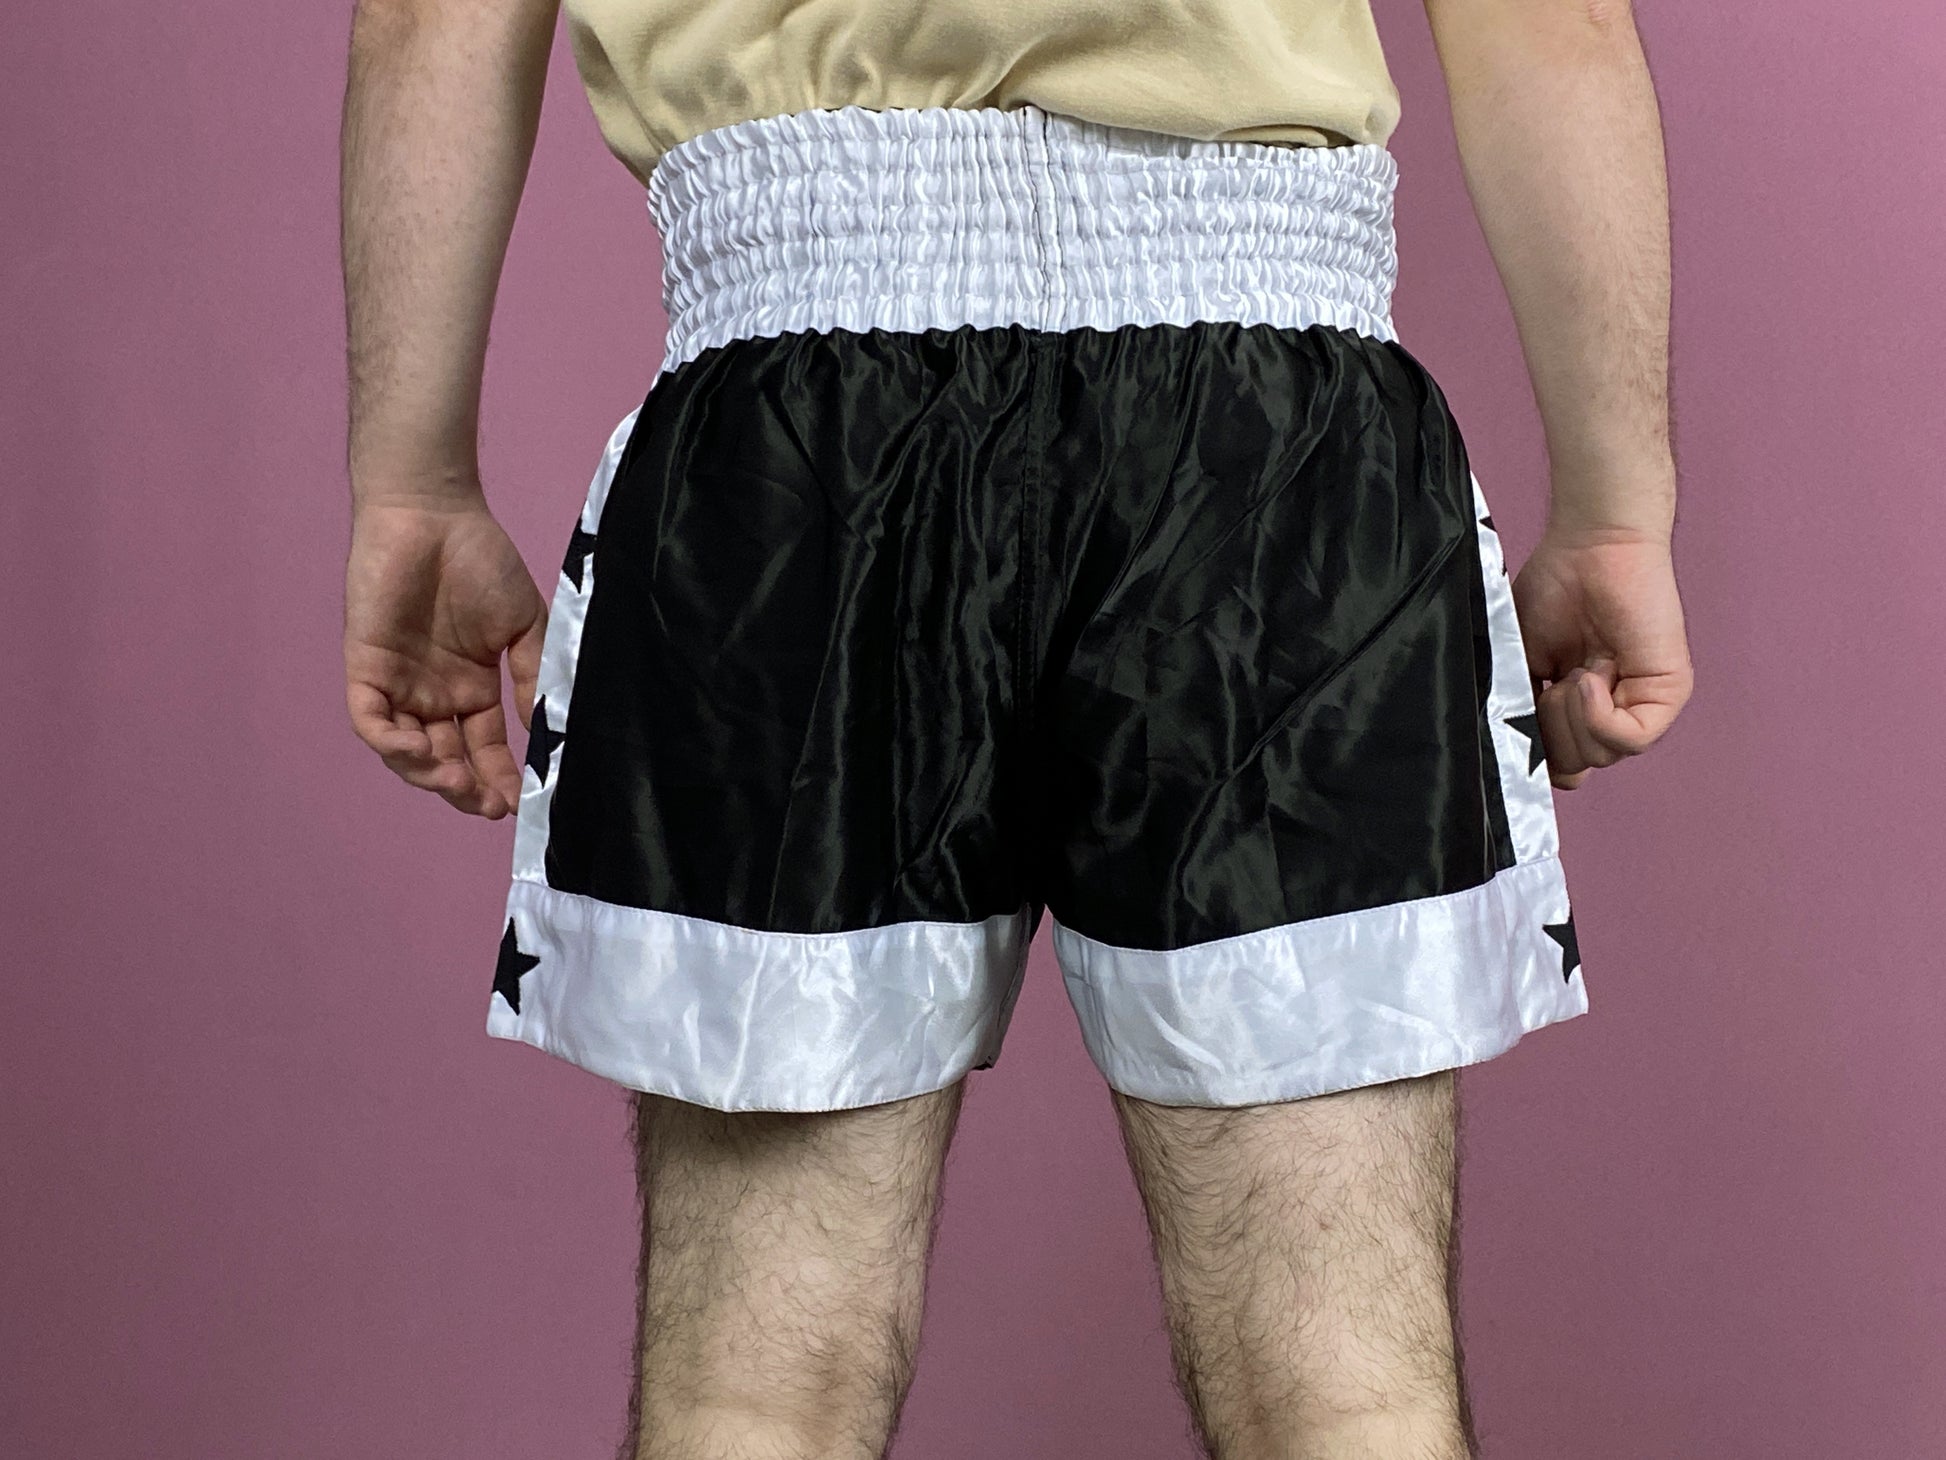 XPRT Vintage Men's Boxing Shorts - Medium Black & White Polyester